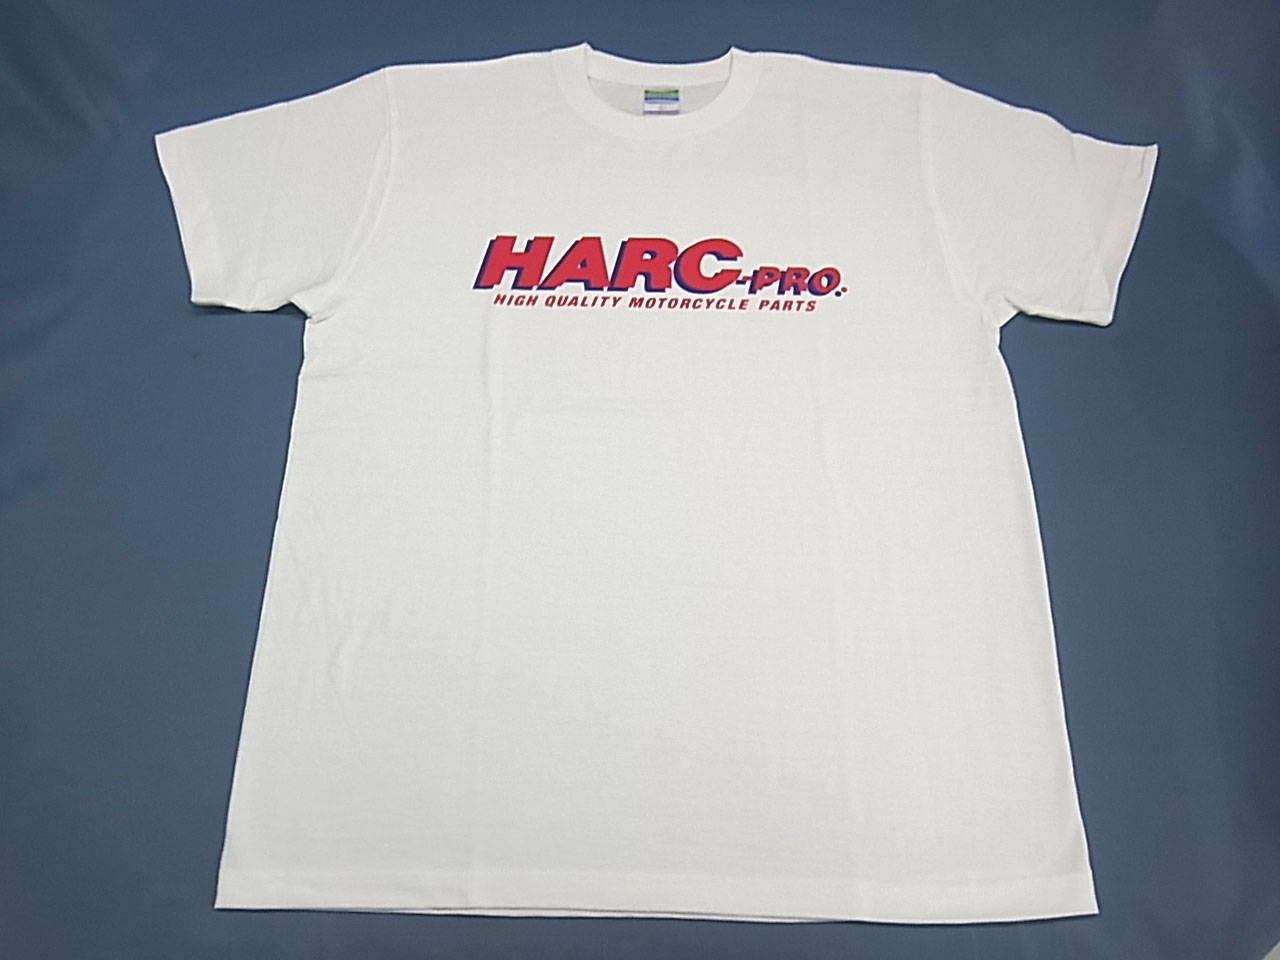 HARC-PRO. t shirt white